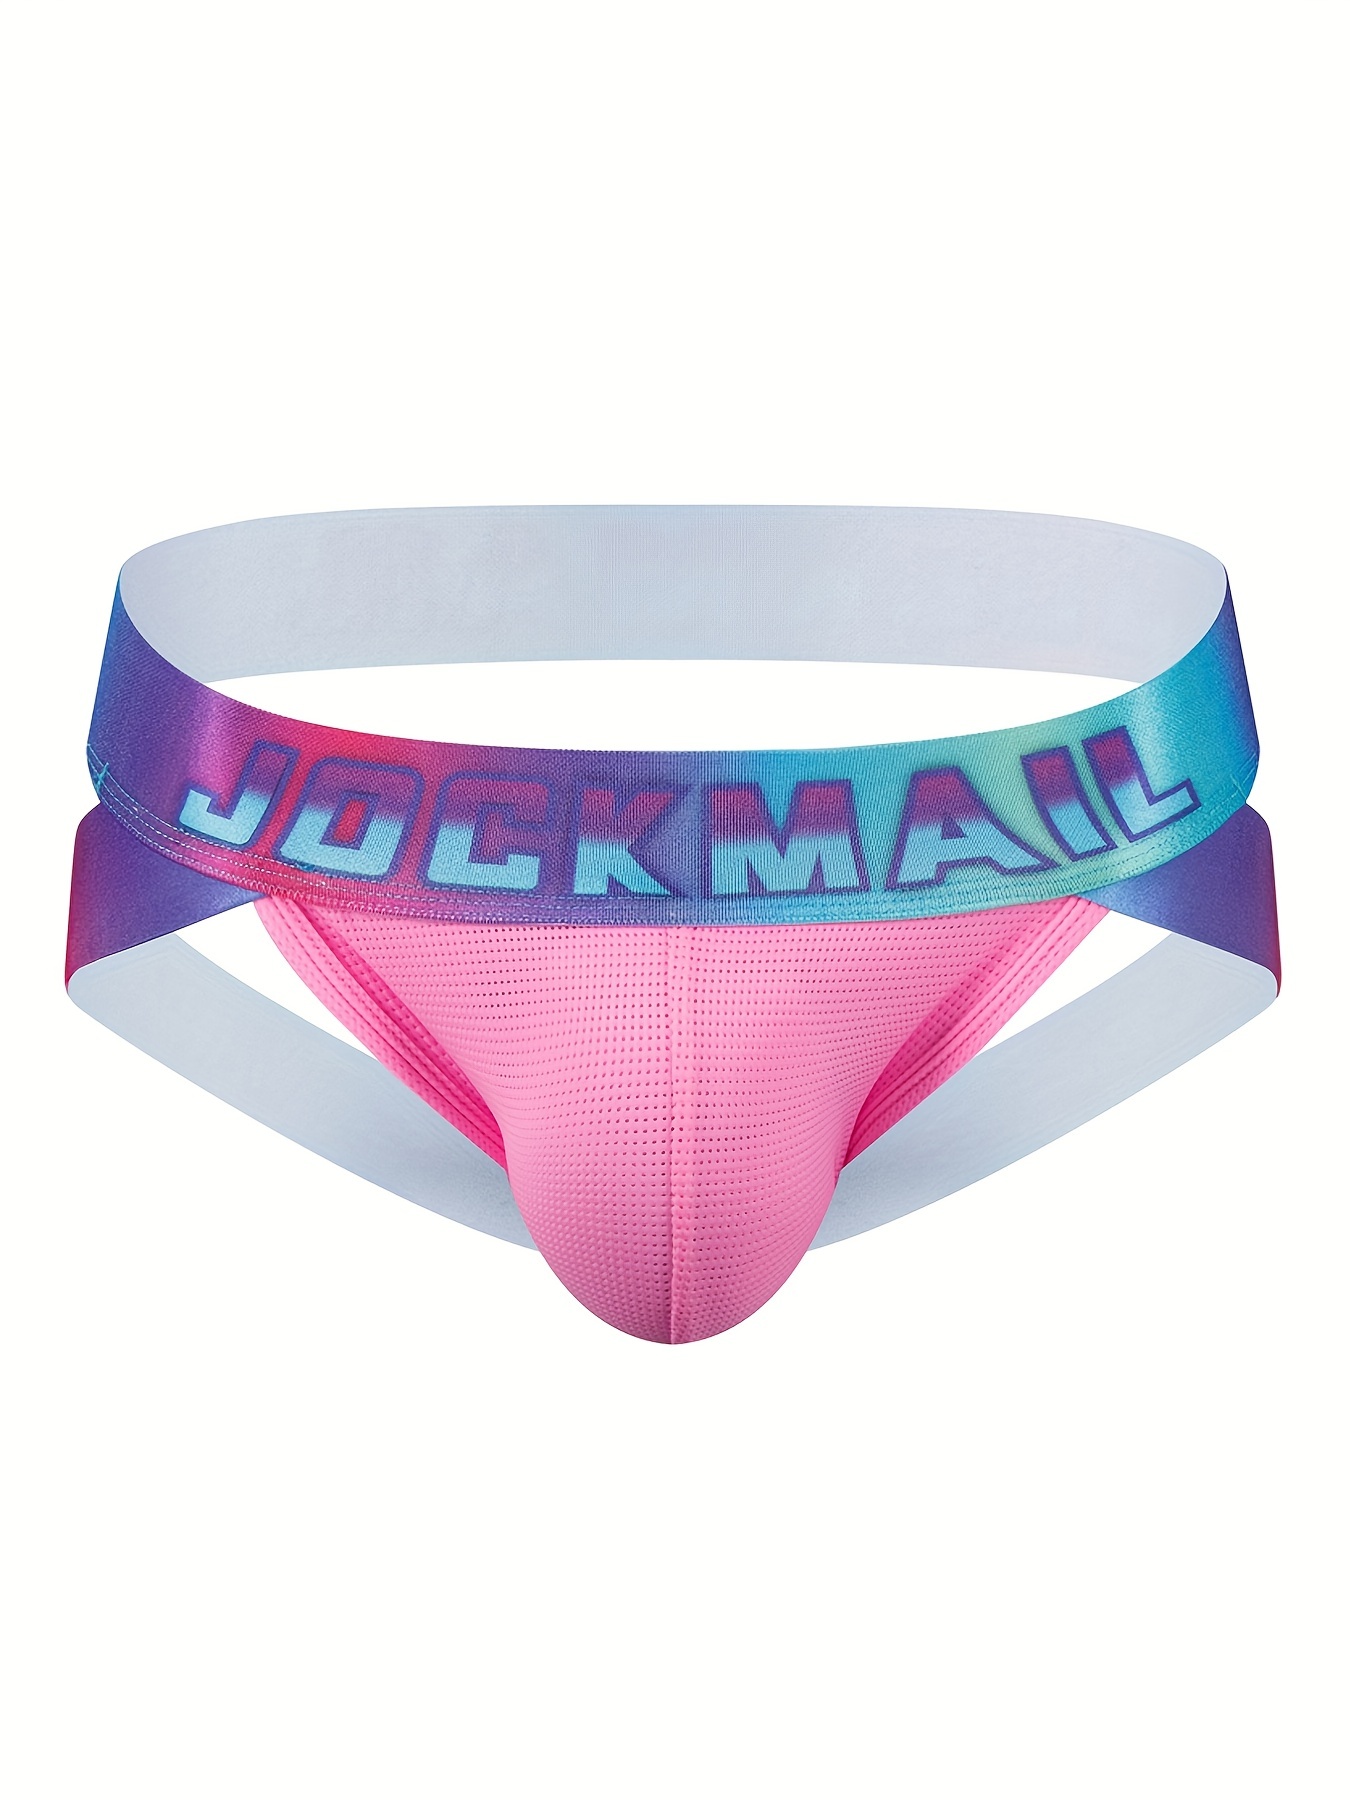 JOCKMAIL Jockstrap Men Underwear String Thong Men Underwear Gay